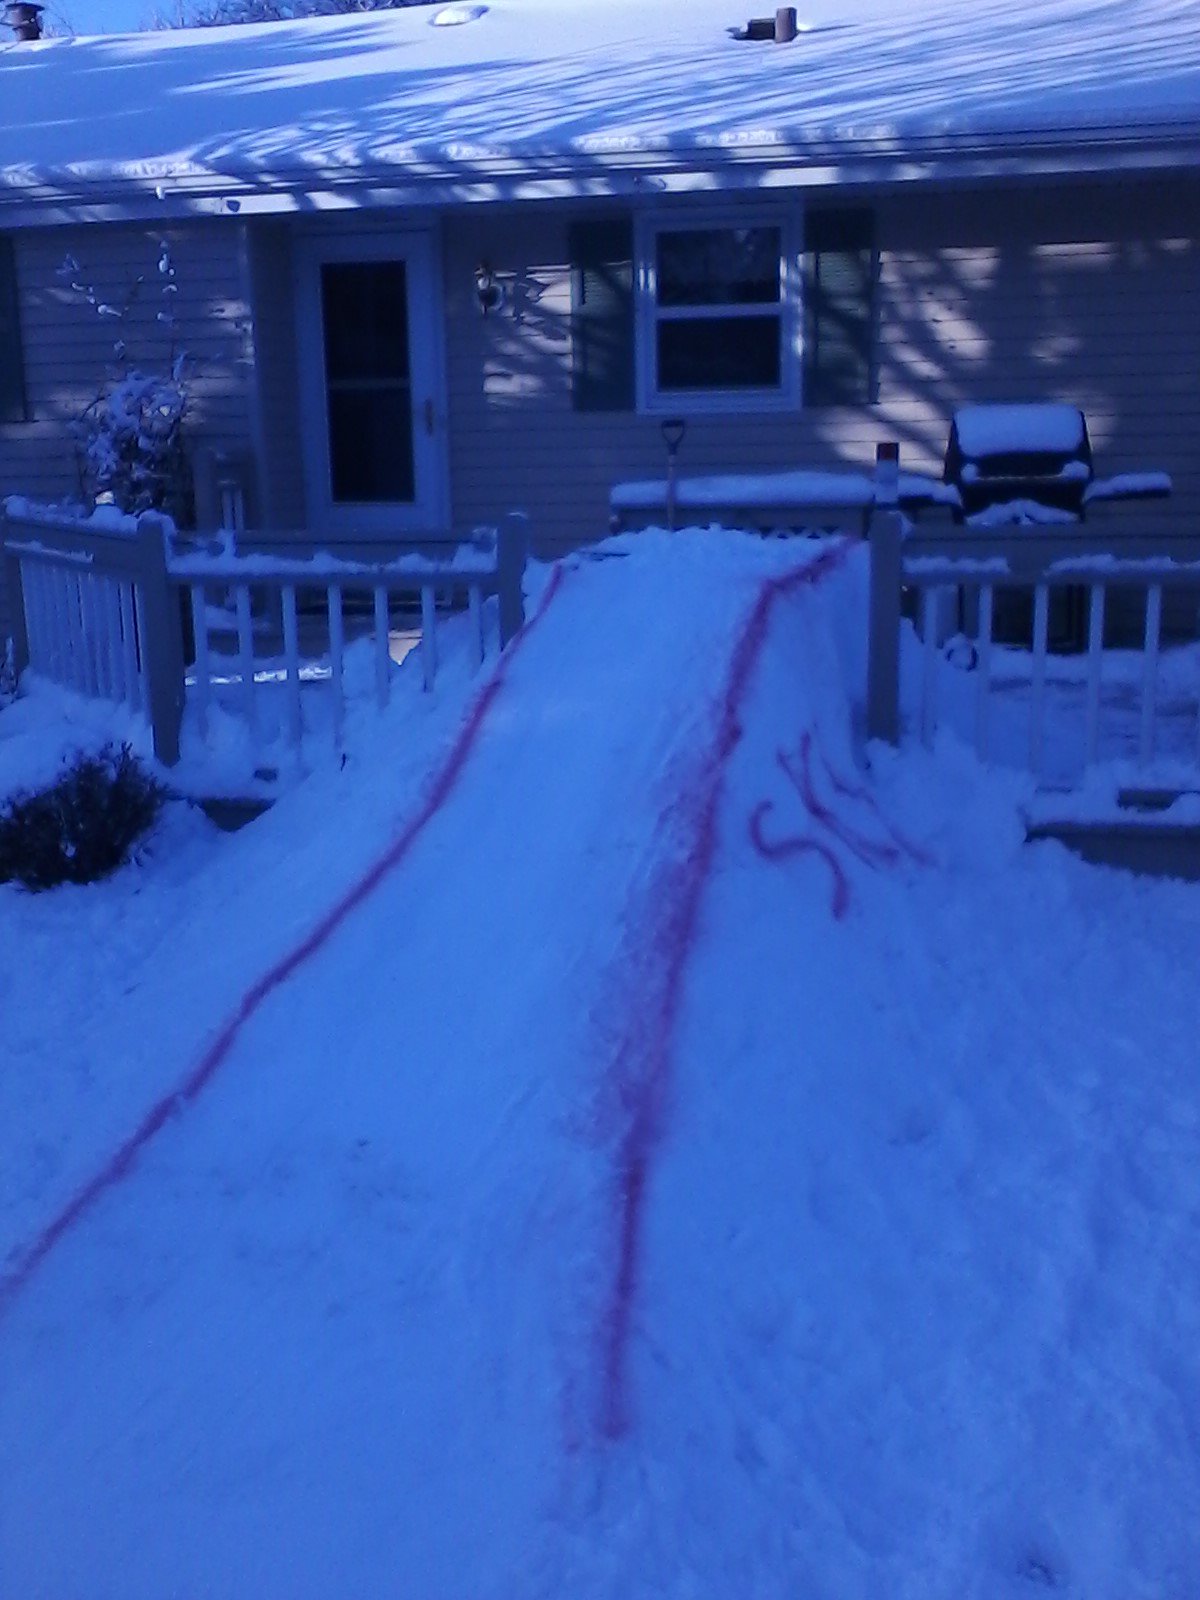 My backyard ski hill